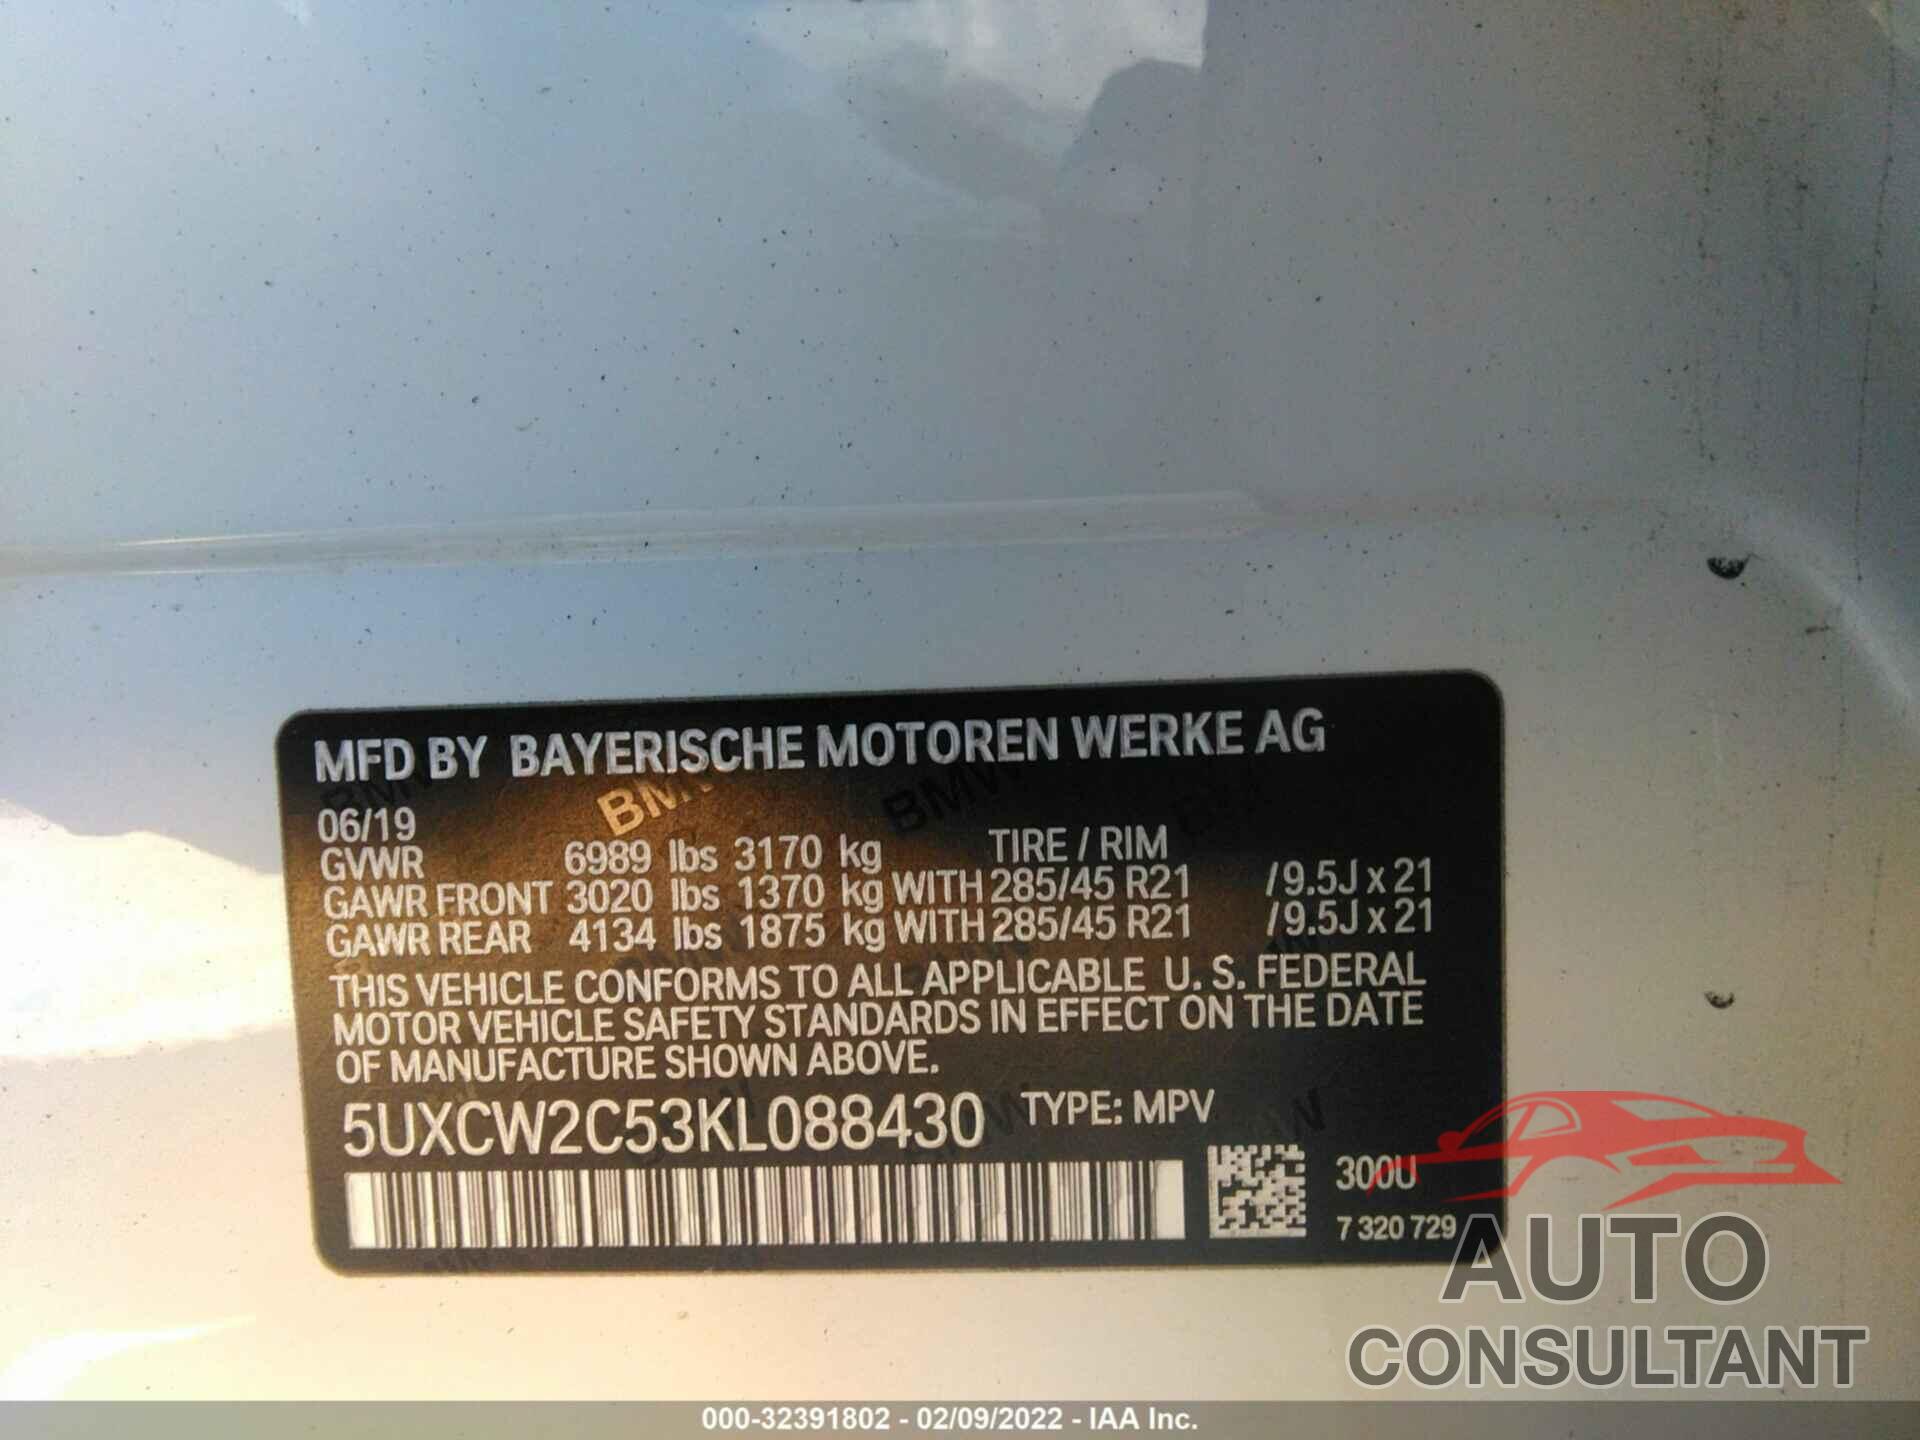 BMW X7 2019 - 5UXCW2C53KL088430